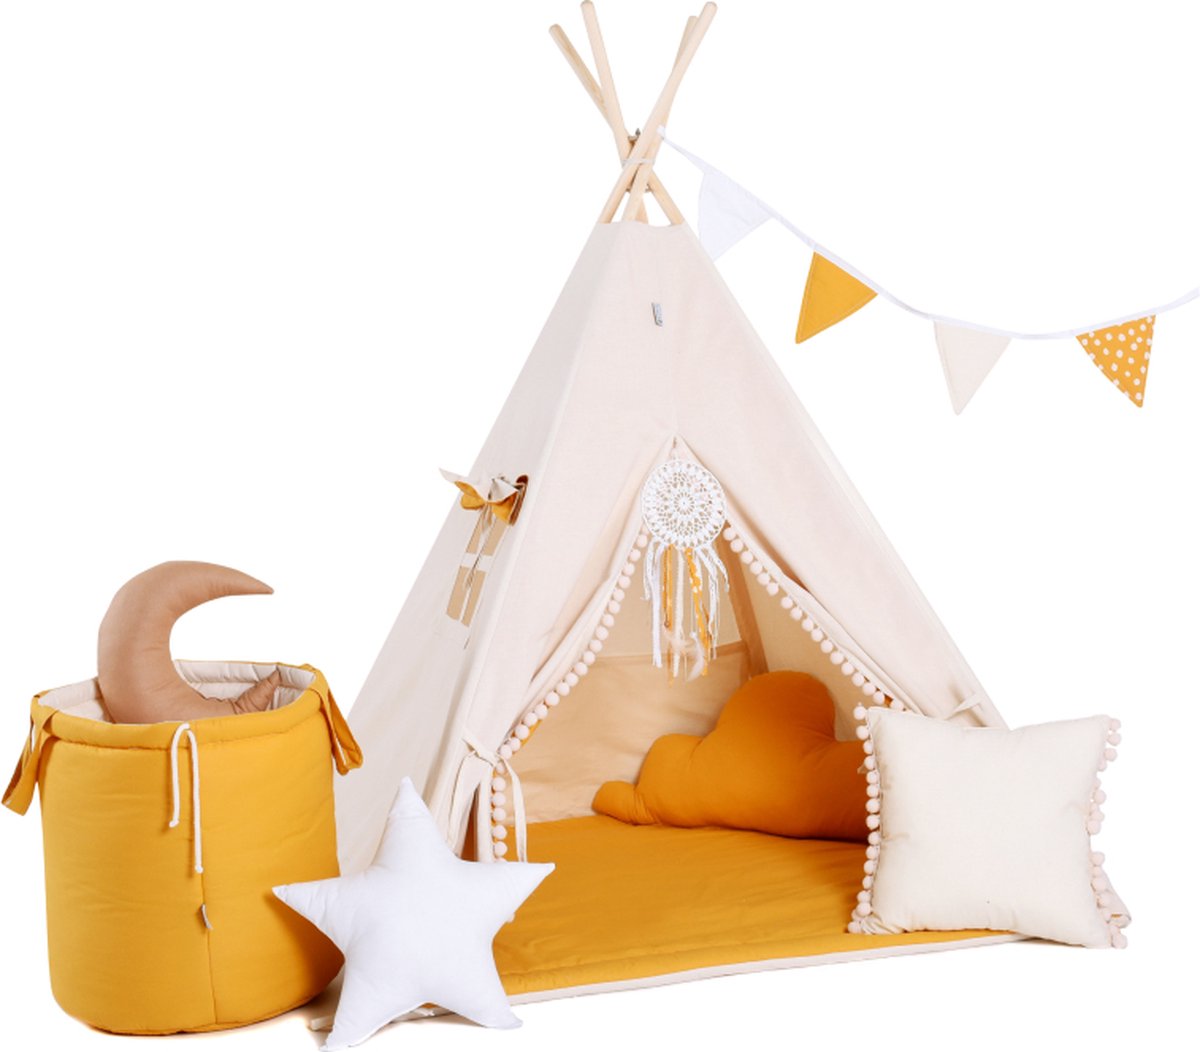 Tipi Tent kinderen - Speeltent - Tipi - Zomerzon - Beige Geel - 160 x 110 x 110 cm - Complete Set met vloerkleed, 2 kussens en toybasket - Wigwam